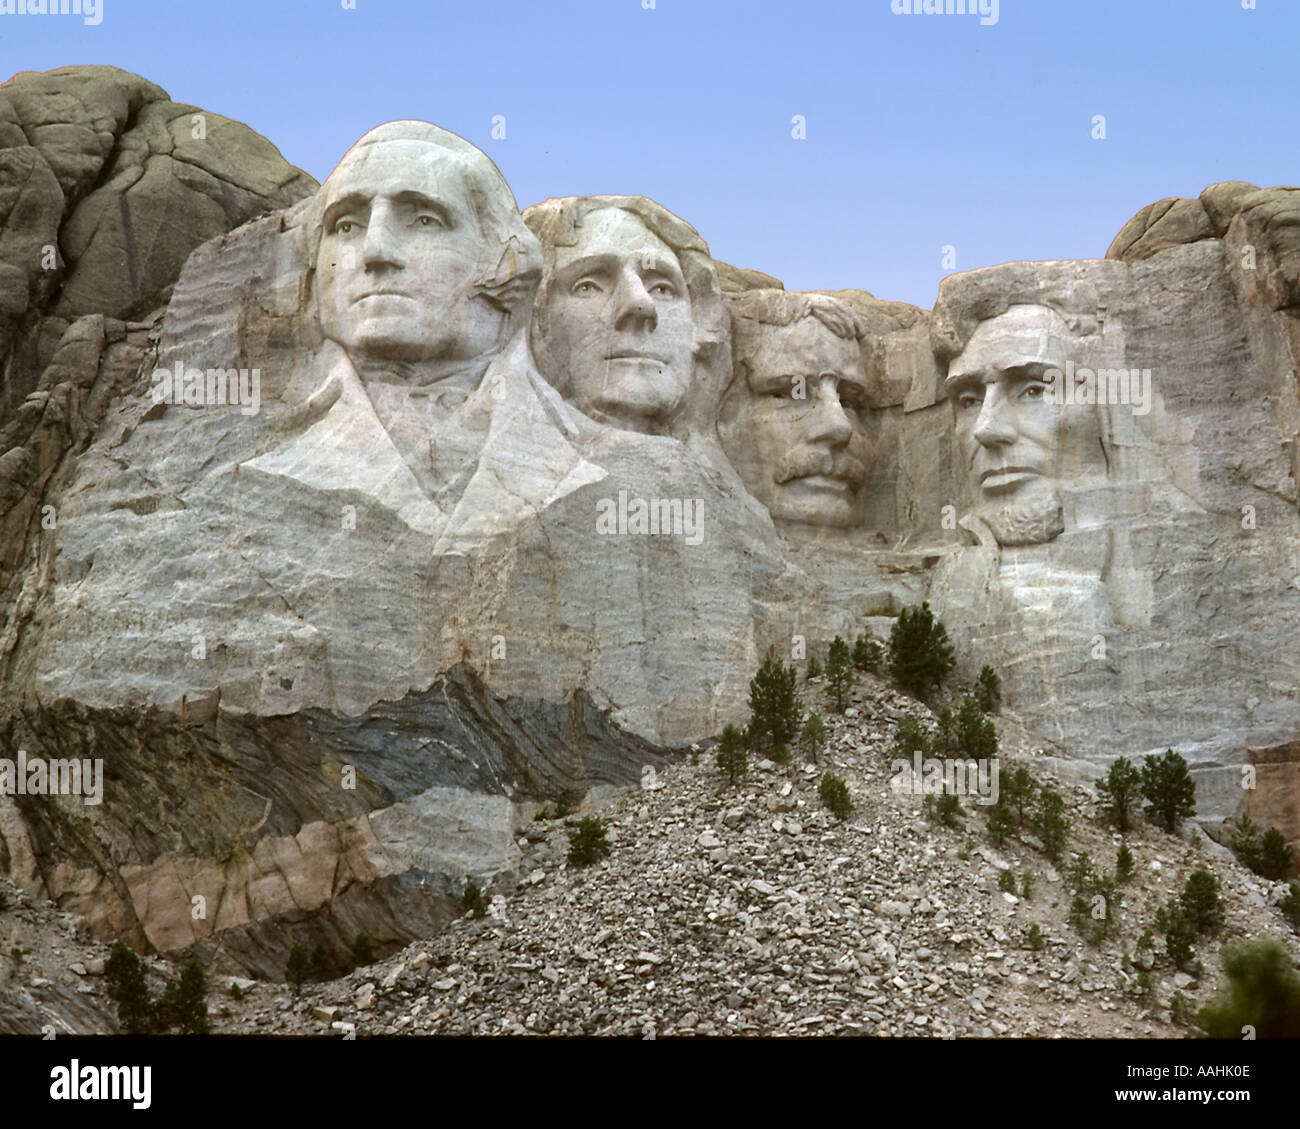 Rock célèbre sculpture de présidents américains au Mont Rushmore Banque D'Images